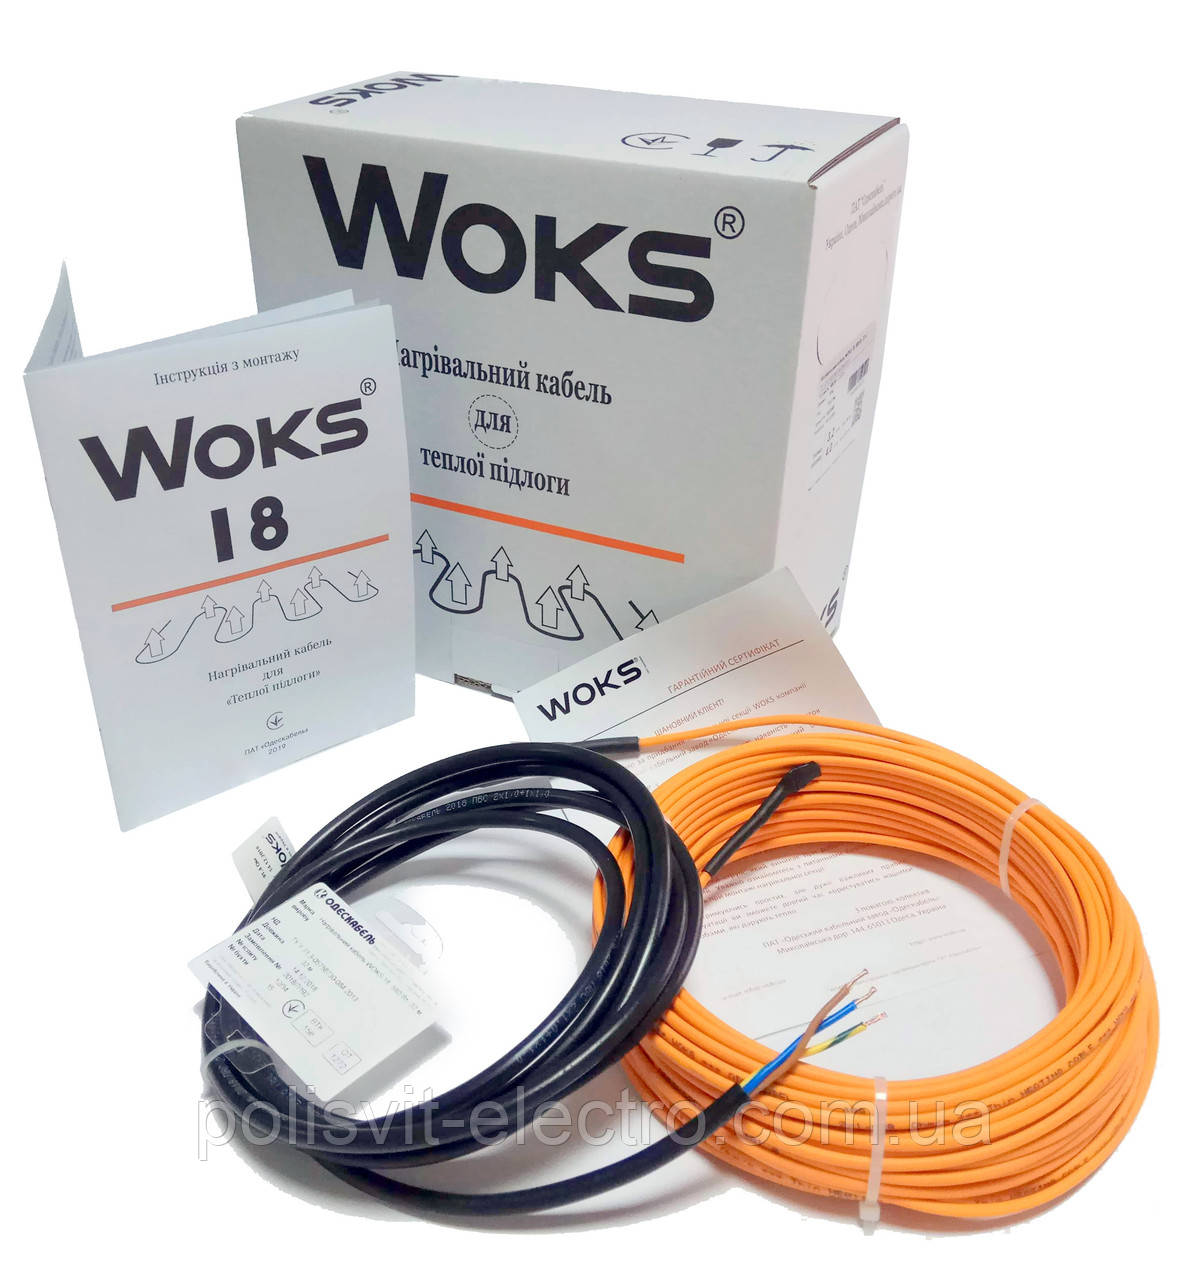 Нагрівальний кабель WOKS 18 на площу 2,2-3,6 м2, 36 м, 604 Вт.  Отримай знижку!